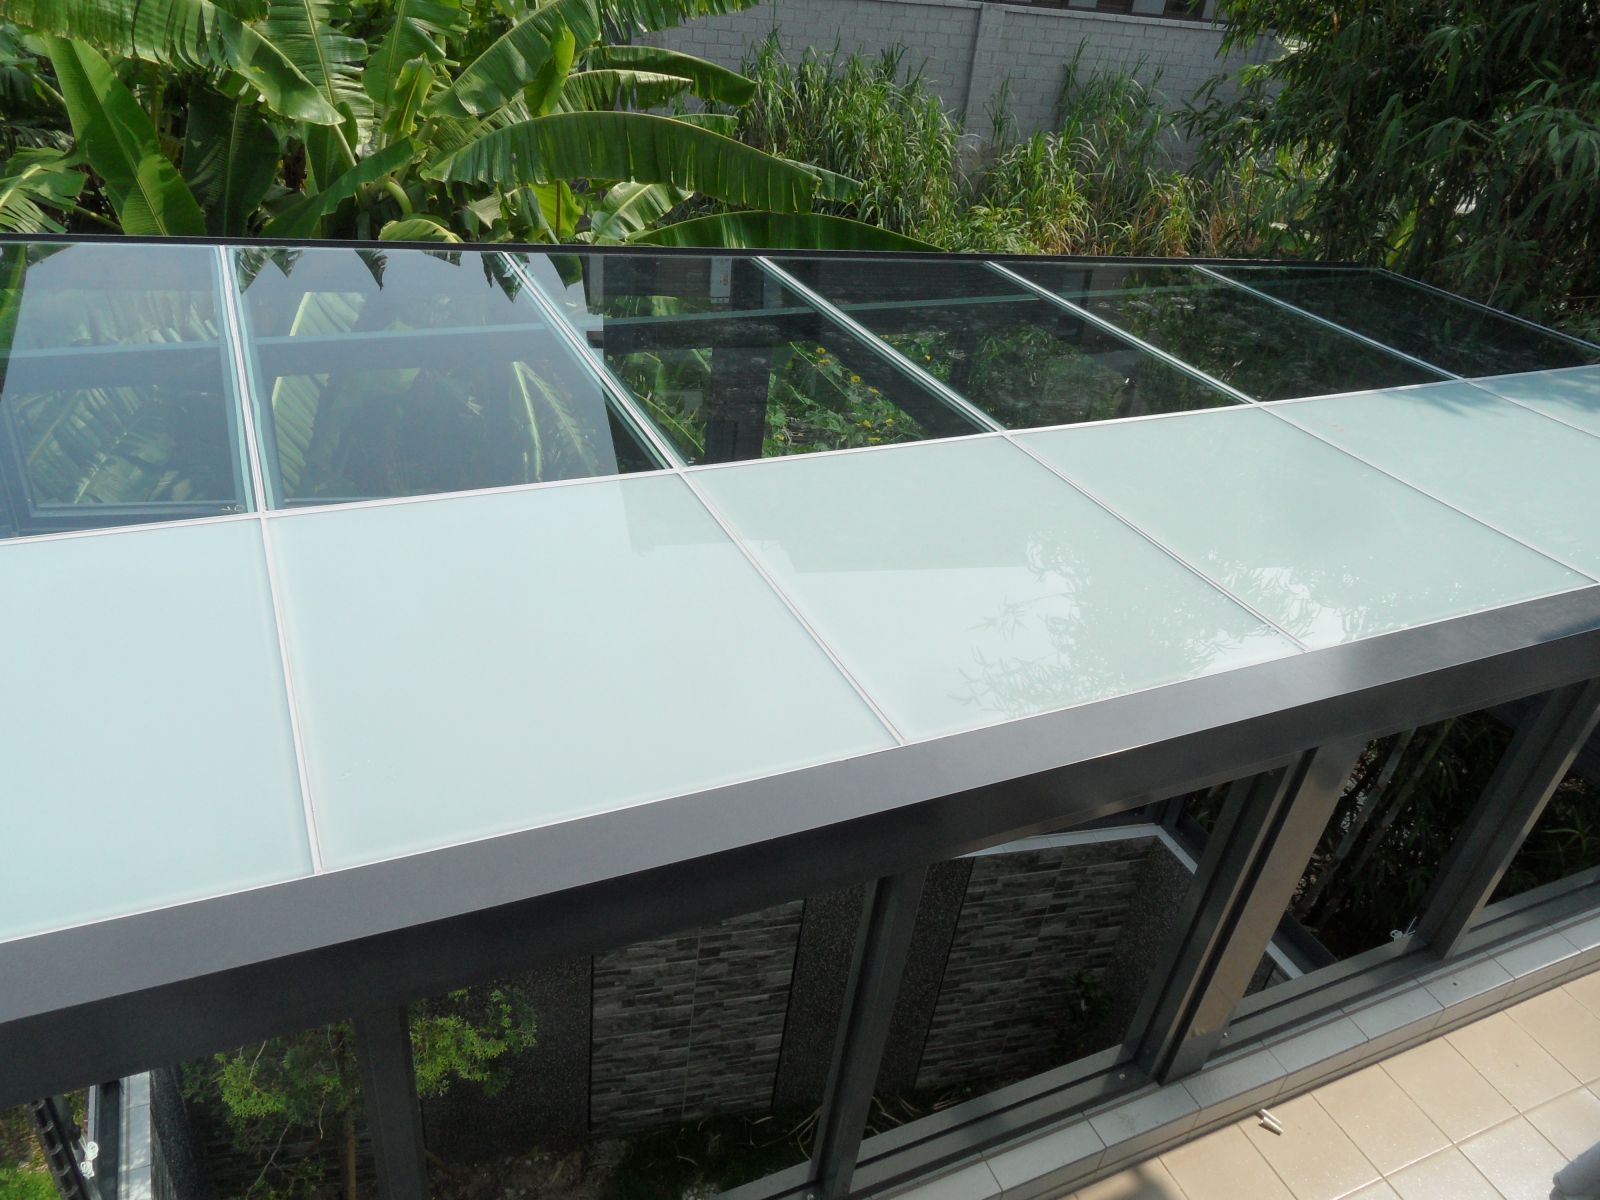 屋頂玻璃以及欄杆部份採用5+5膠合玻璃2/3採光性.1/3遮陽性